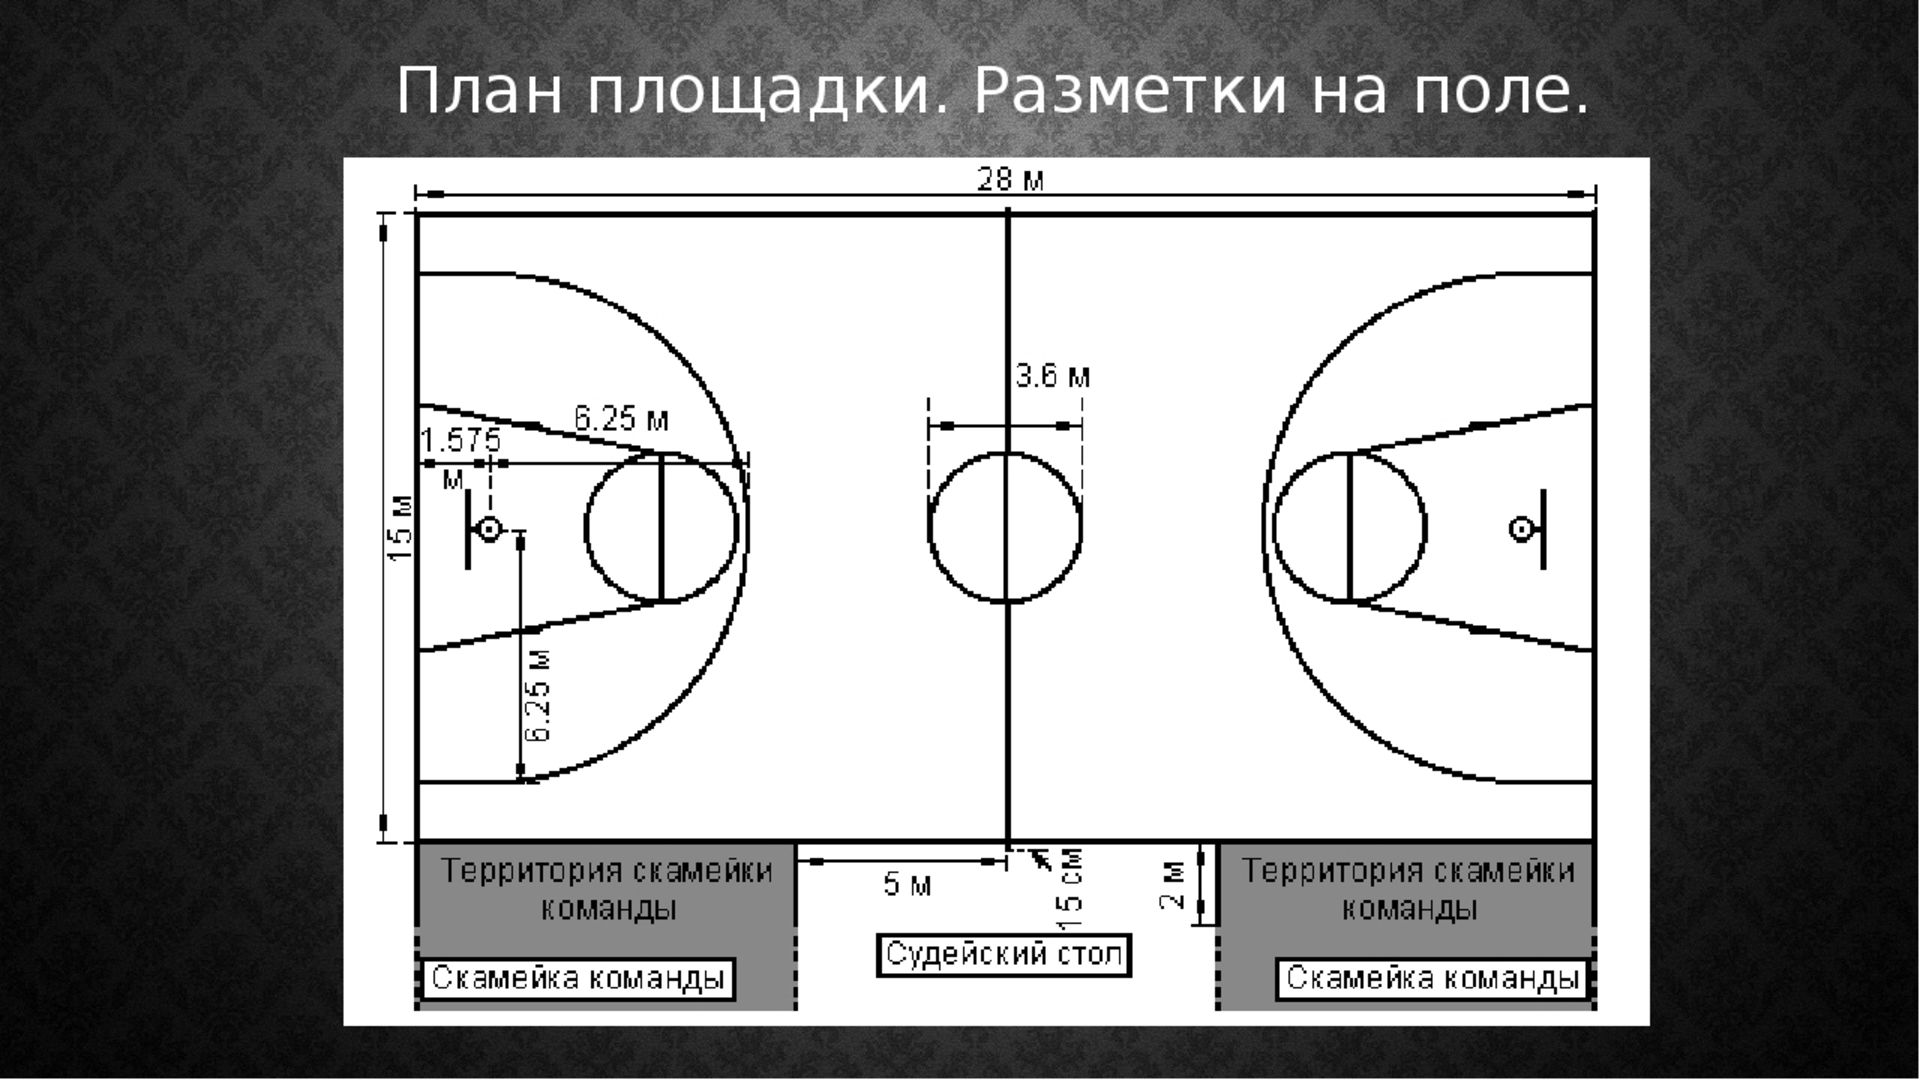 Сколько зон в баскетболе. Баскетбольная площадка с размерами и линиями. Разметка баскетбольной площадки 18х9. Стандартный размер баскетбольной площадки. Ширина линий разметки баскетбольной площадки.